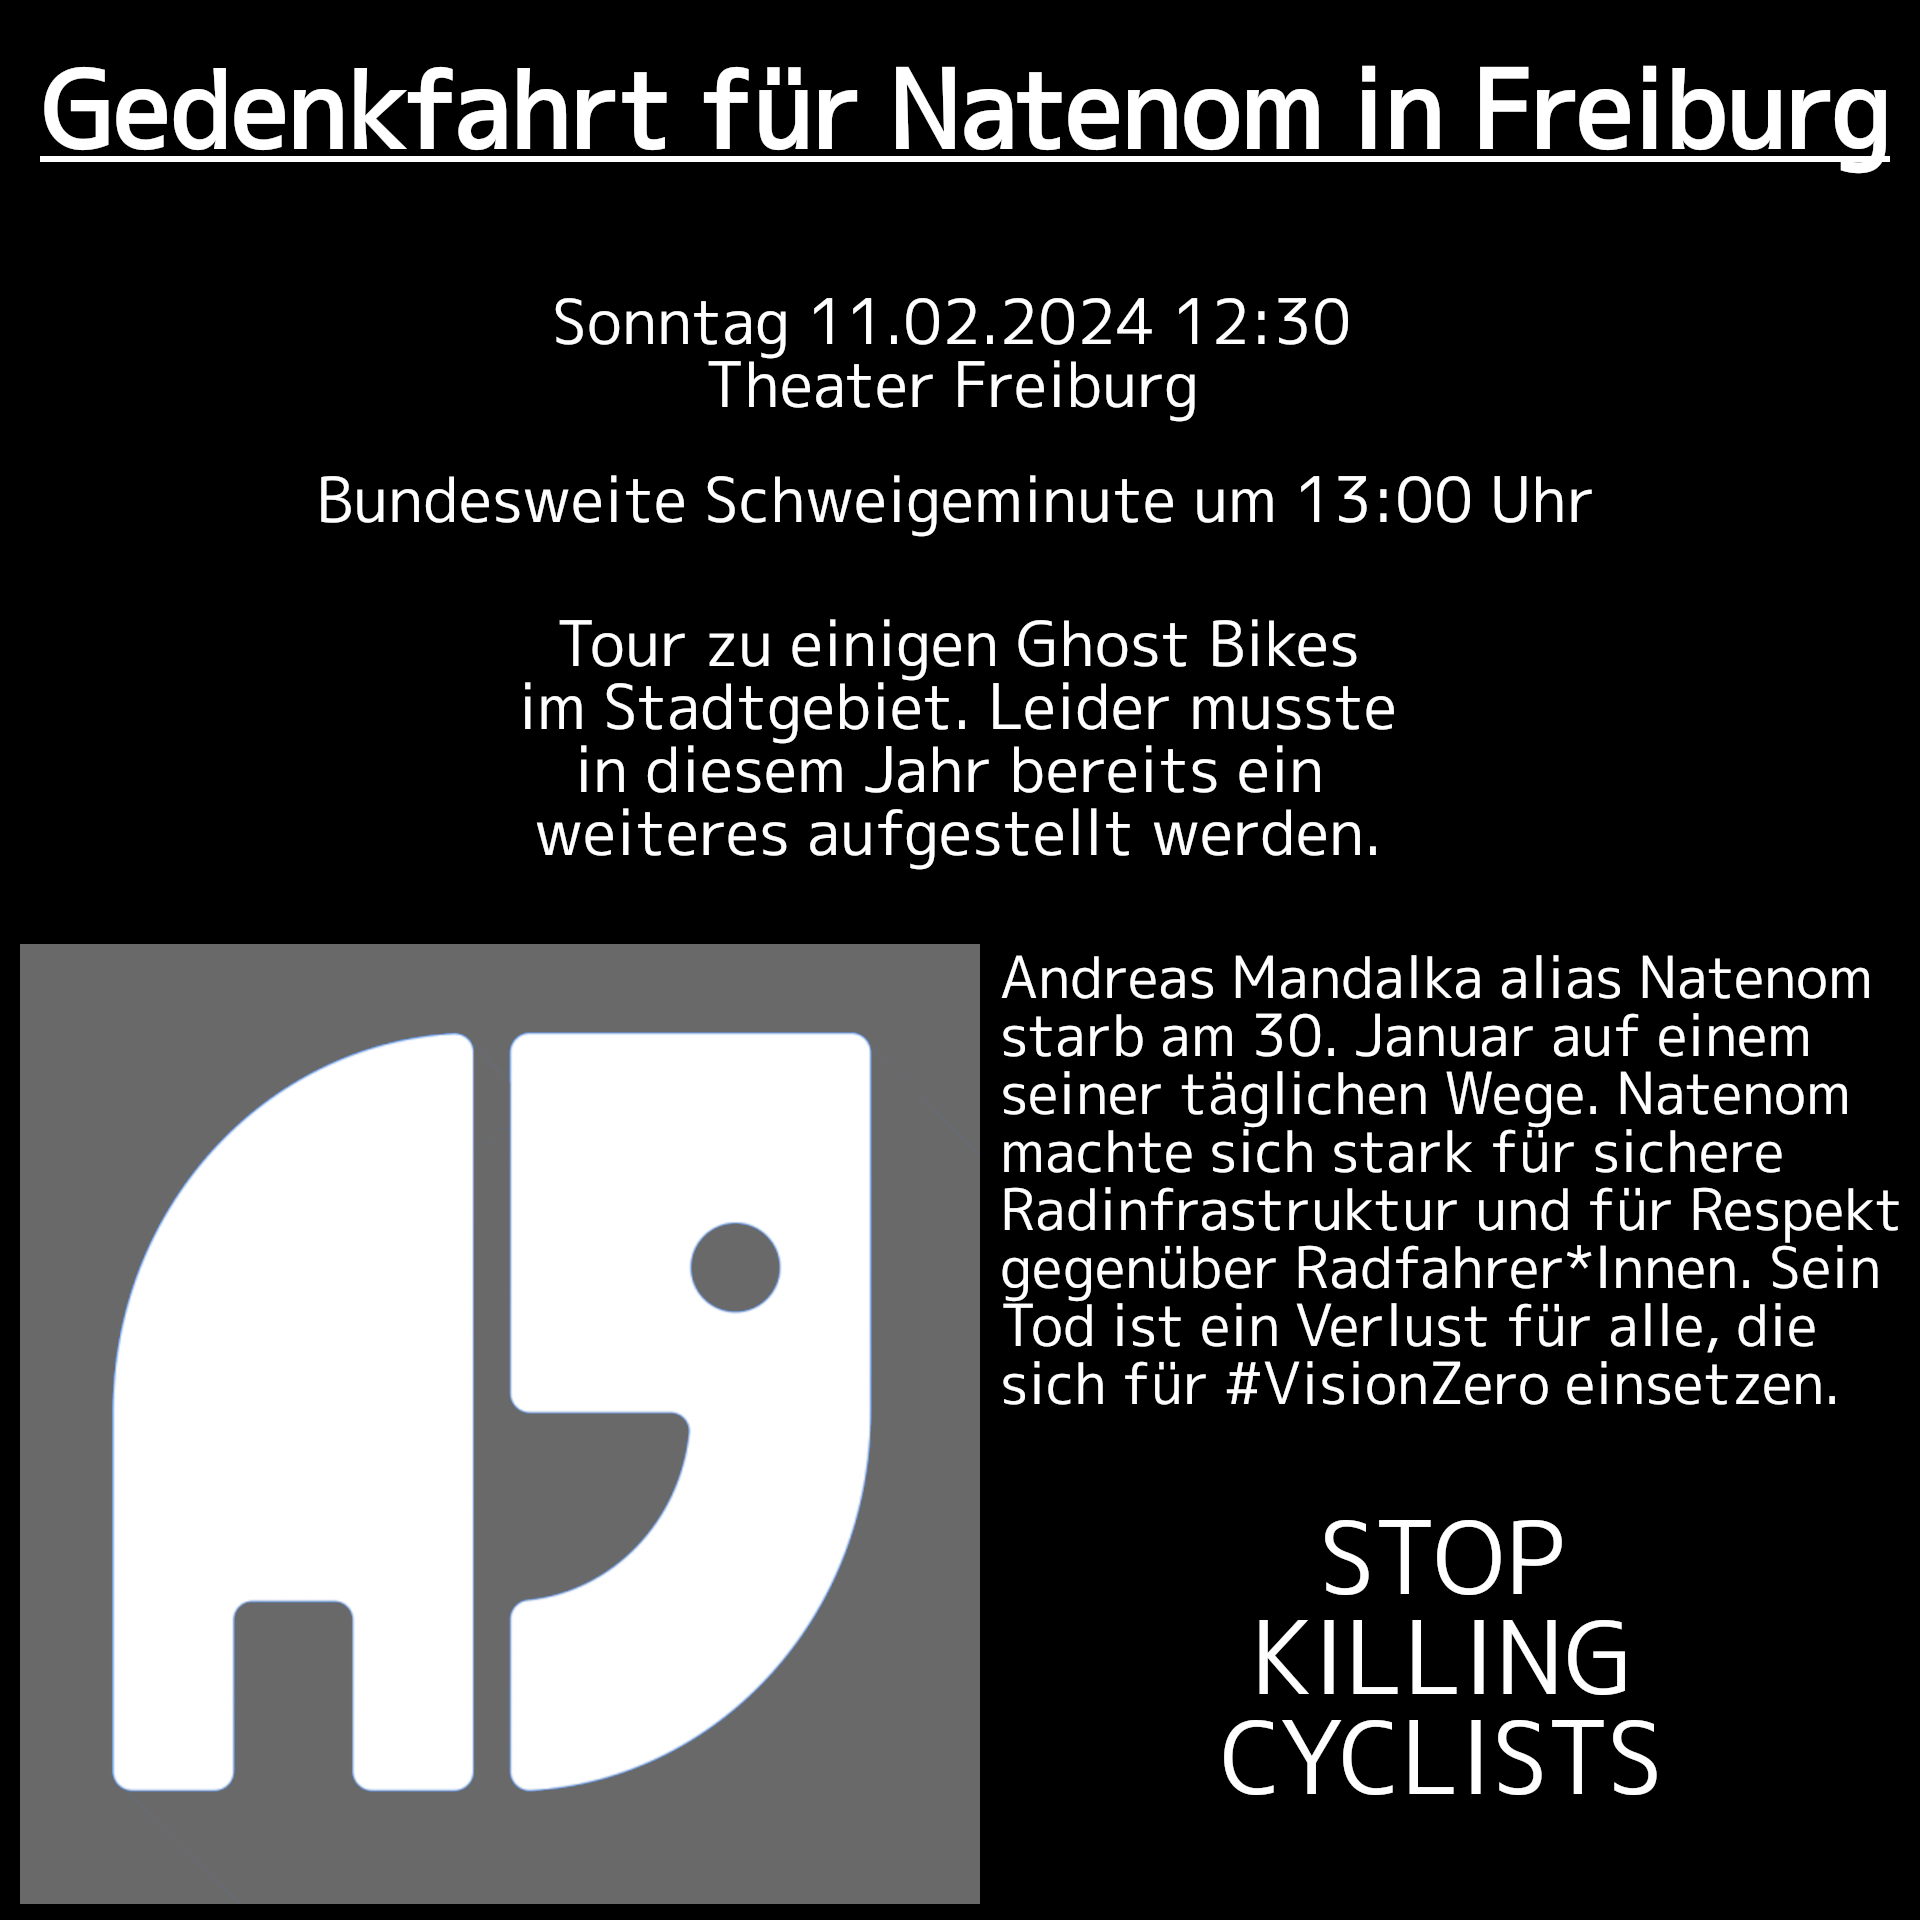 Flyer Gedenkfahrt für Natenom in Freiburg, So 11.2.2024 ab 12:30 am Theater Freiburg